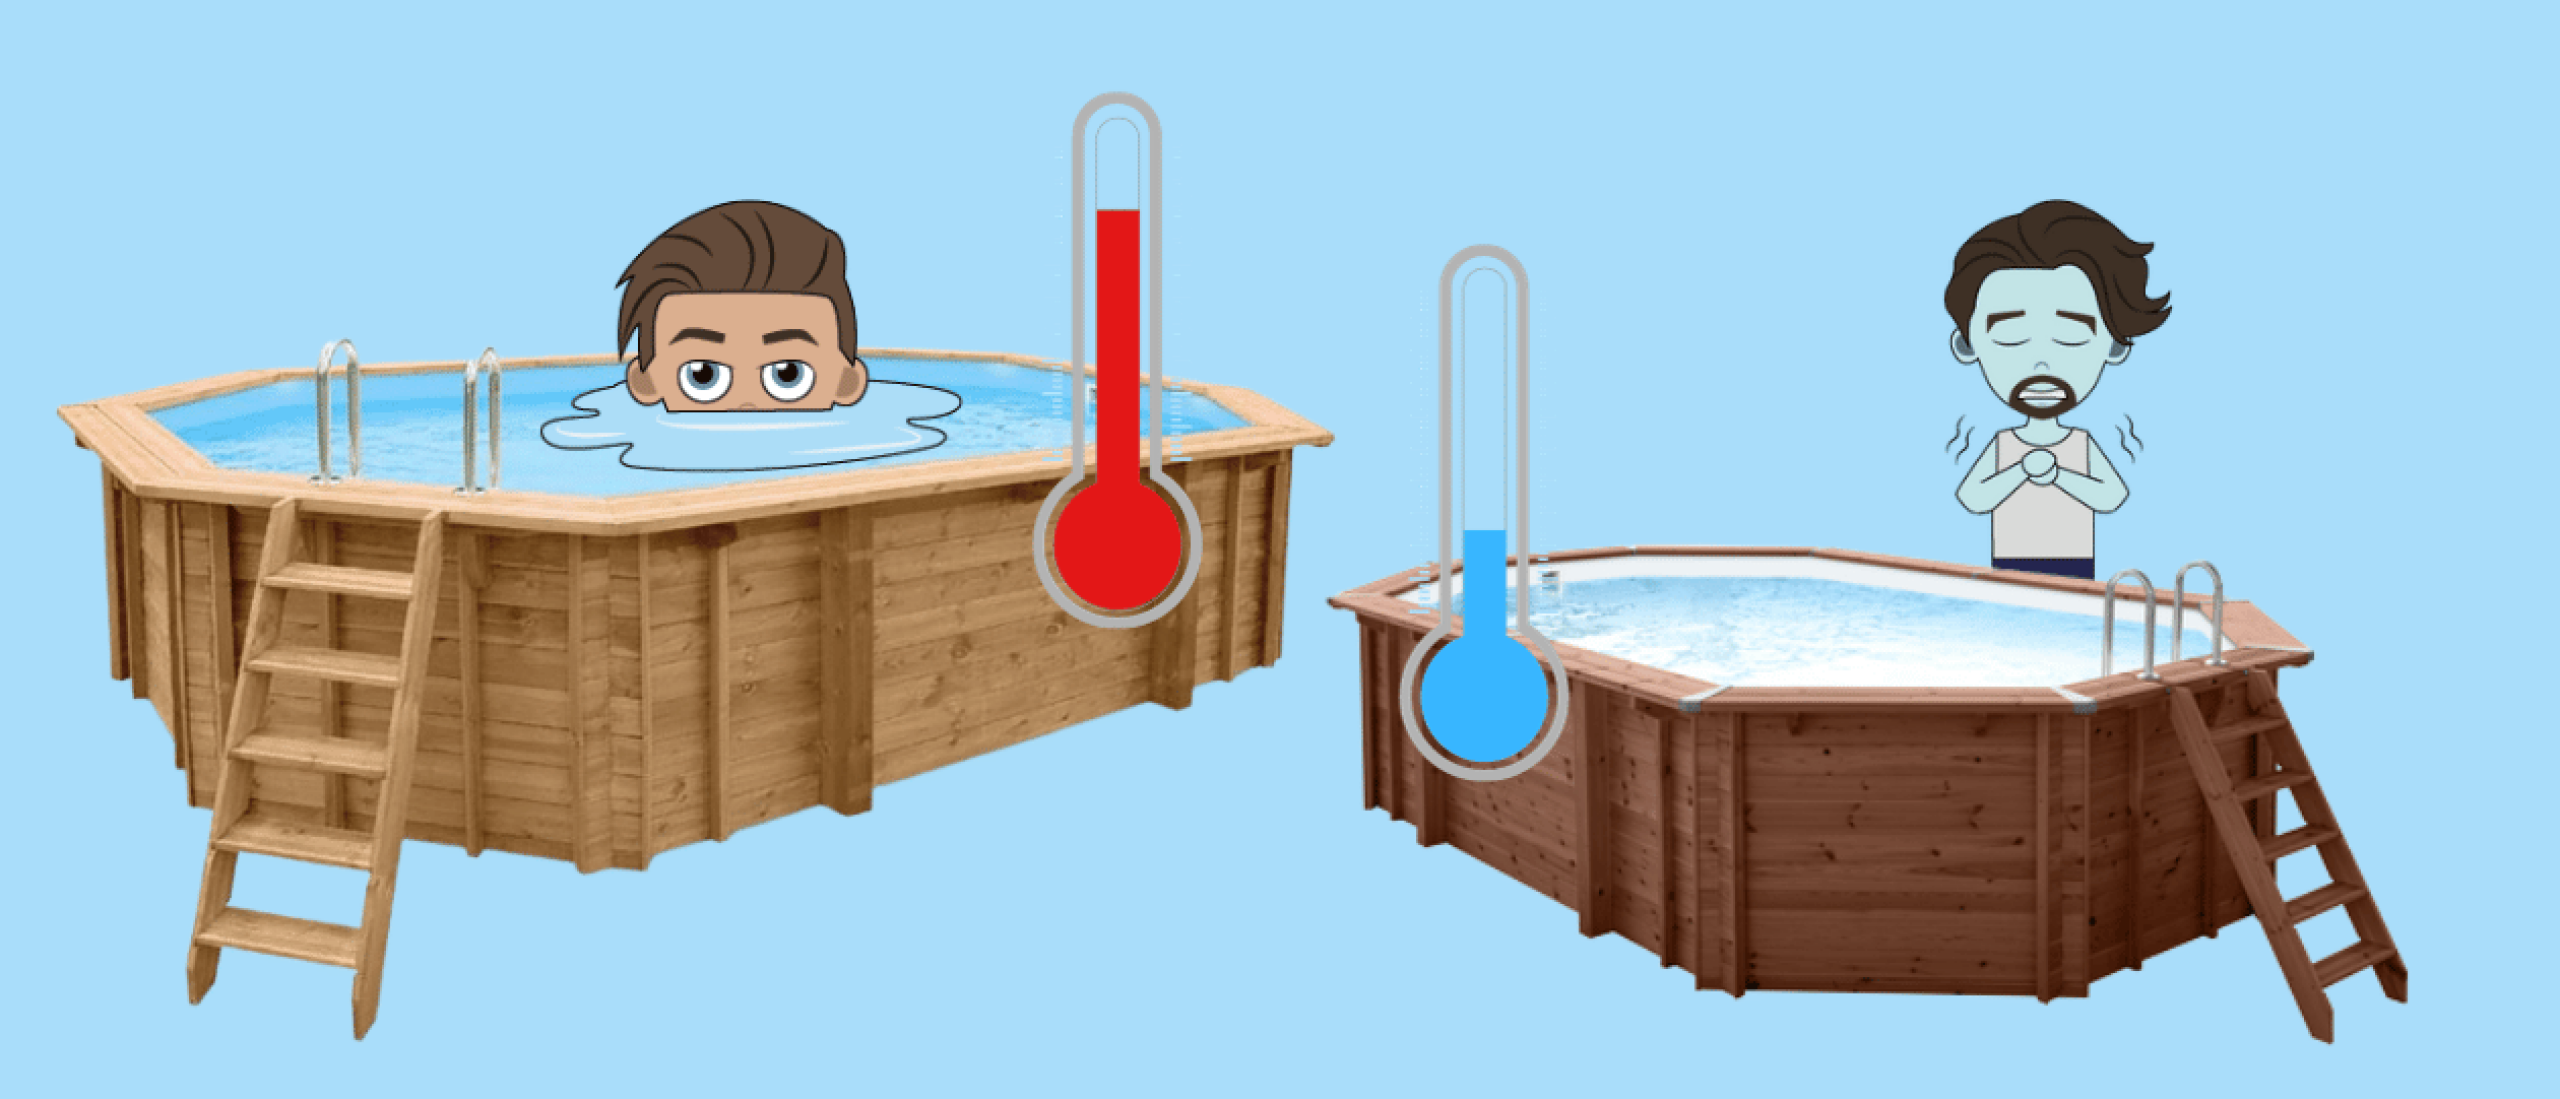 Wat is de ideale temperatuur voor zwembadwater?